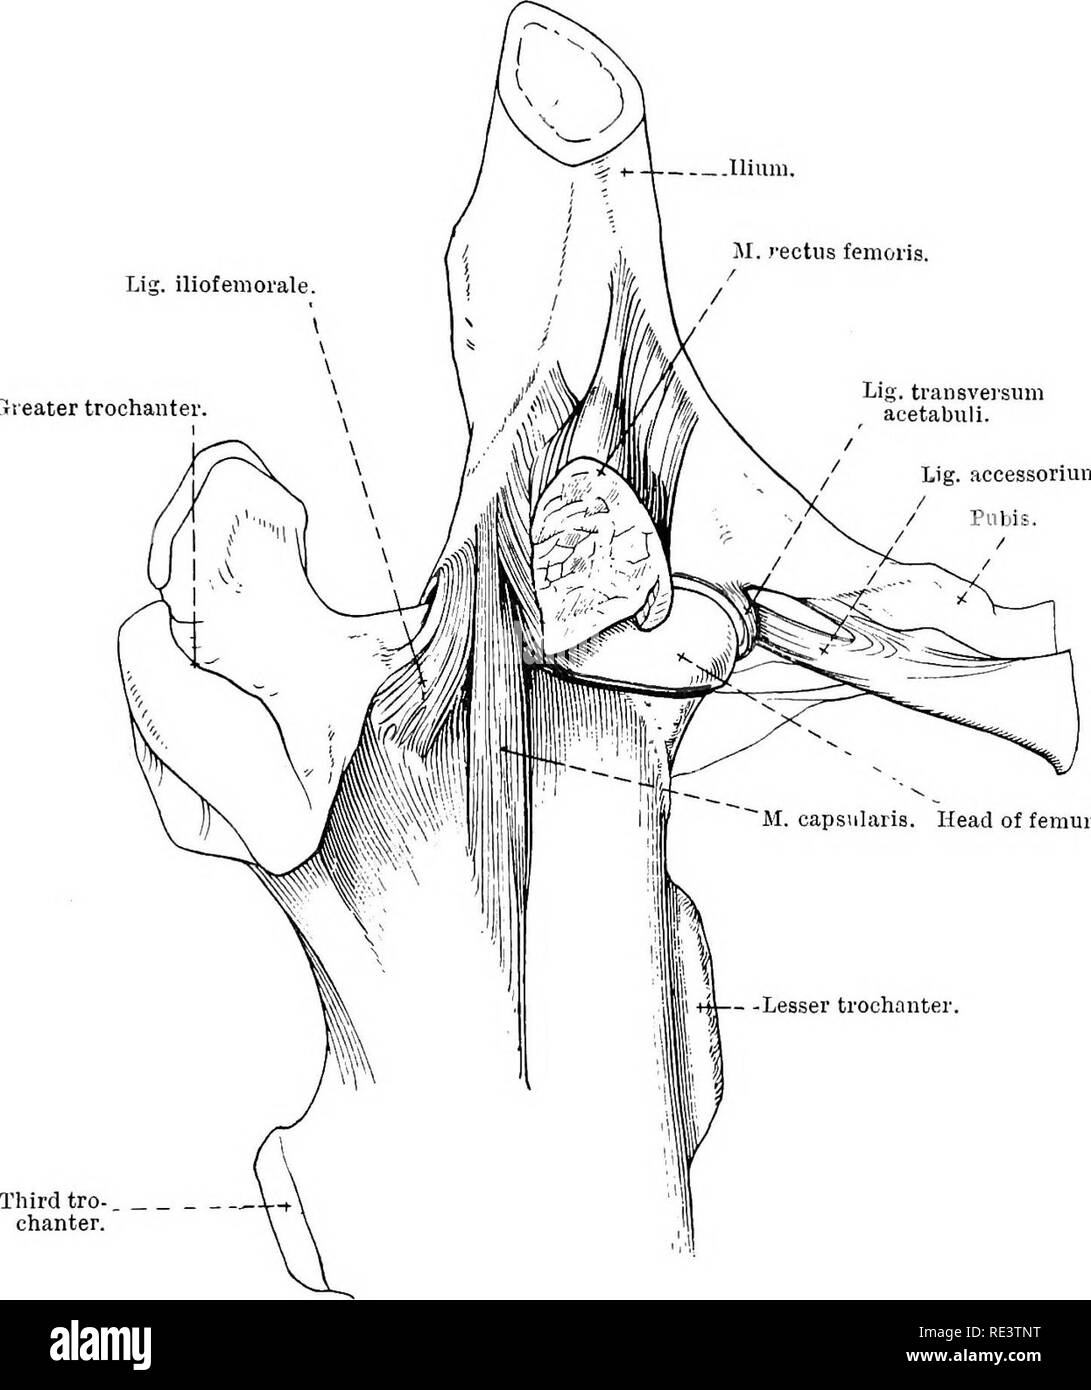 . La Anatomia Topografica degli arti del cavallo. Cavalli; fisiologia. Gli arti del HOKSE 123 laterale e anteriore, dove un nastro obliquo di fibre passa dall'ileo al femore e rappresenta l'ilio-legamento femorale (ligamentum ilio-femorale) del giunto dell'uomo. La capsula è strettamente supportato  .nium. M. rectus femoris. Lig. iliofeniorale. Gieater trocantere Lig. transversum acetabuli. Lig. accessorium.. Fig. 83.-aspetto anteriore dell'articolazione dell'anca. La linea di attacco del rivestimento sinoviale della capsula articolare è indicata in rosso. da muscoli (otturatore esterno, profondo gluteale Foto Stock